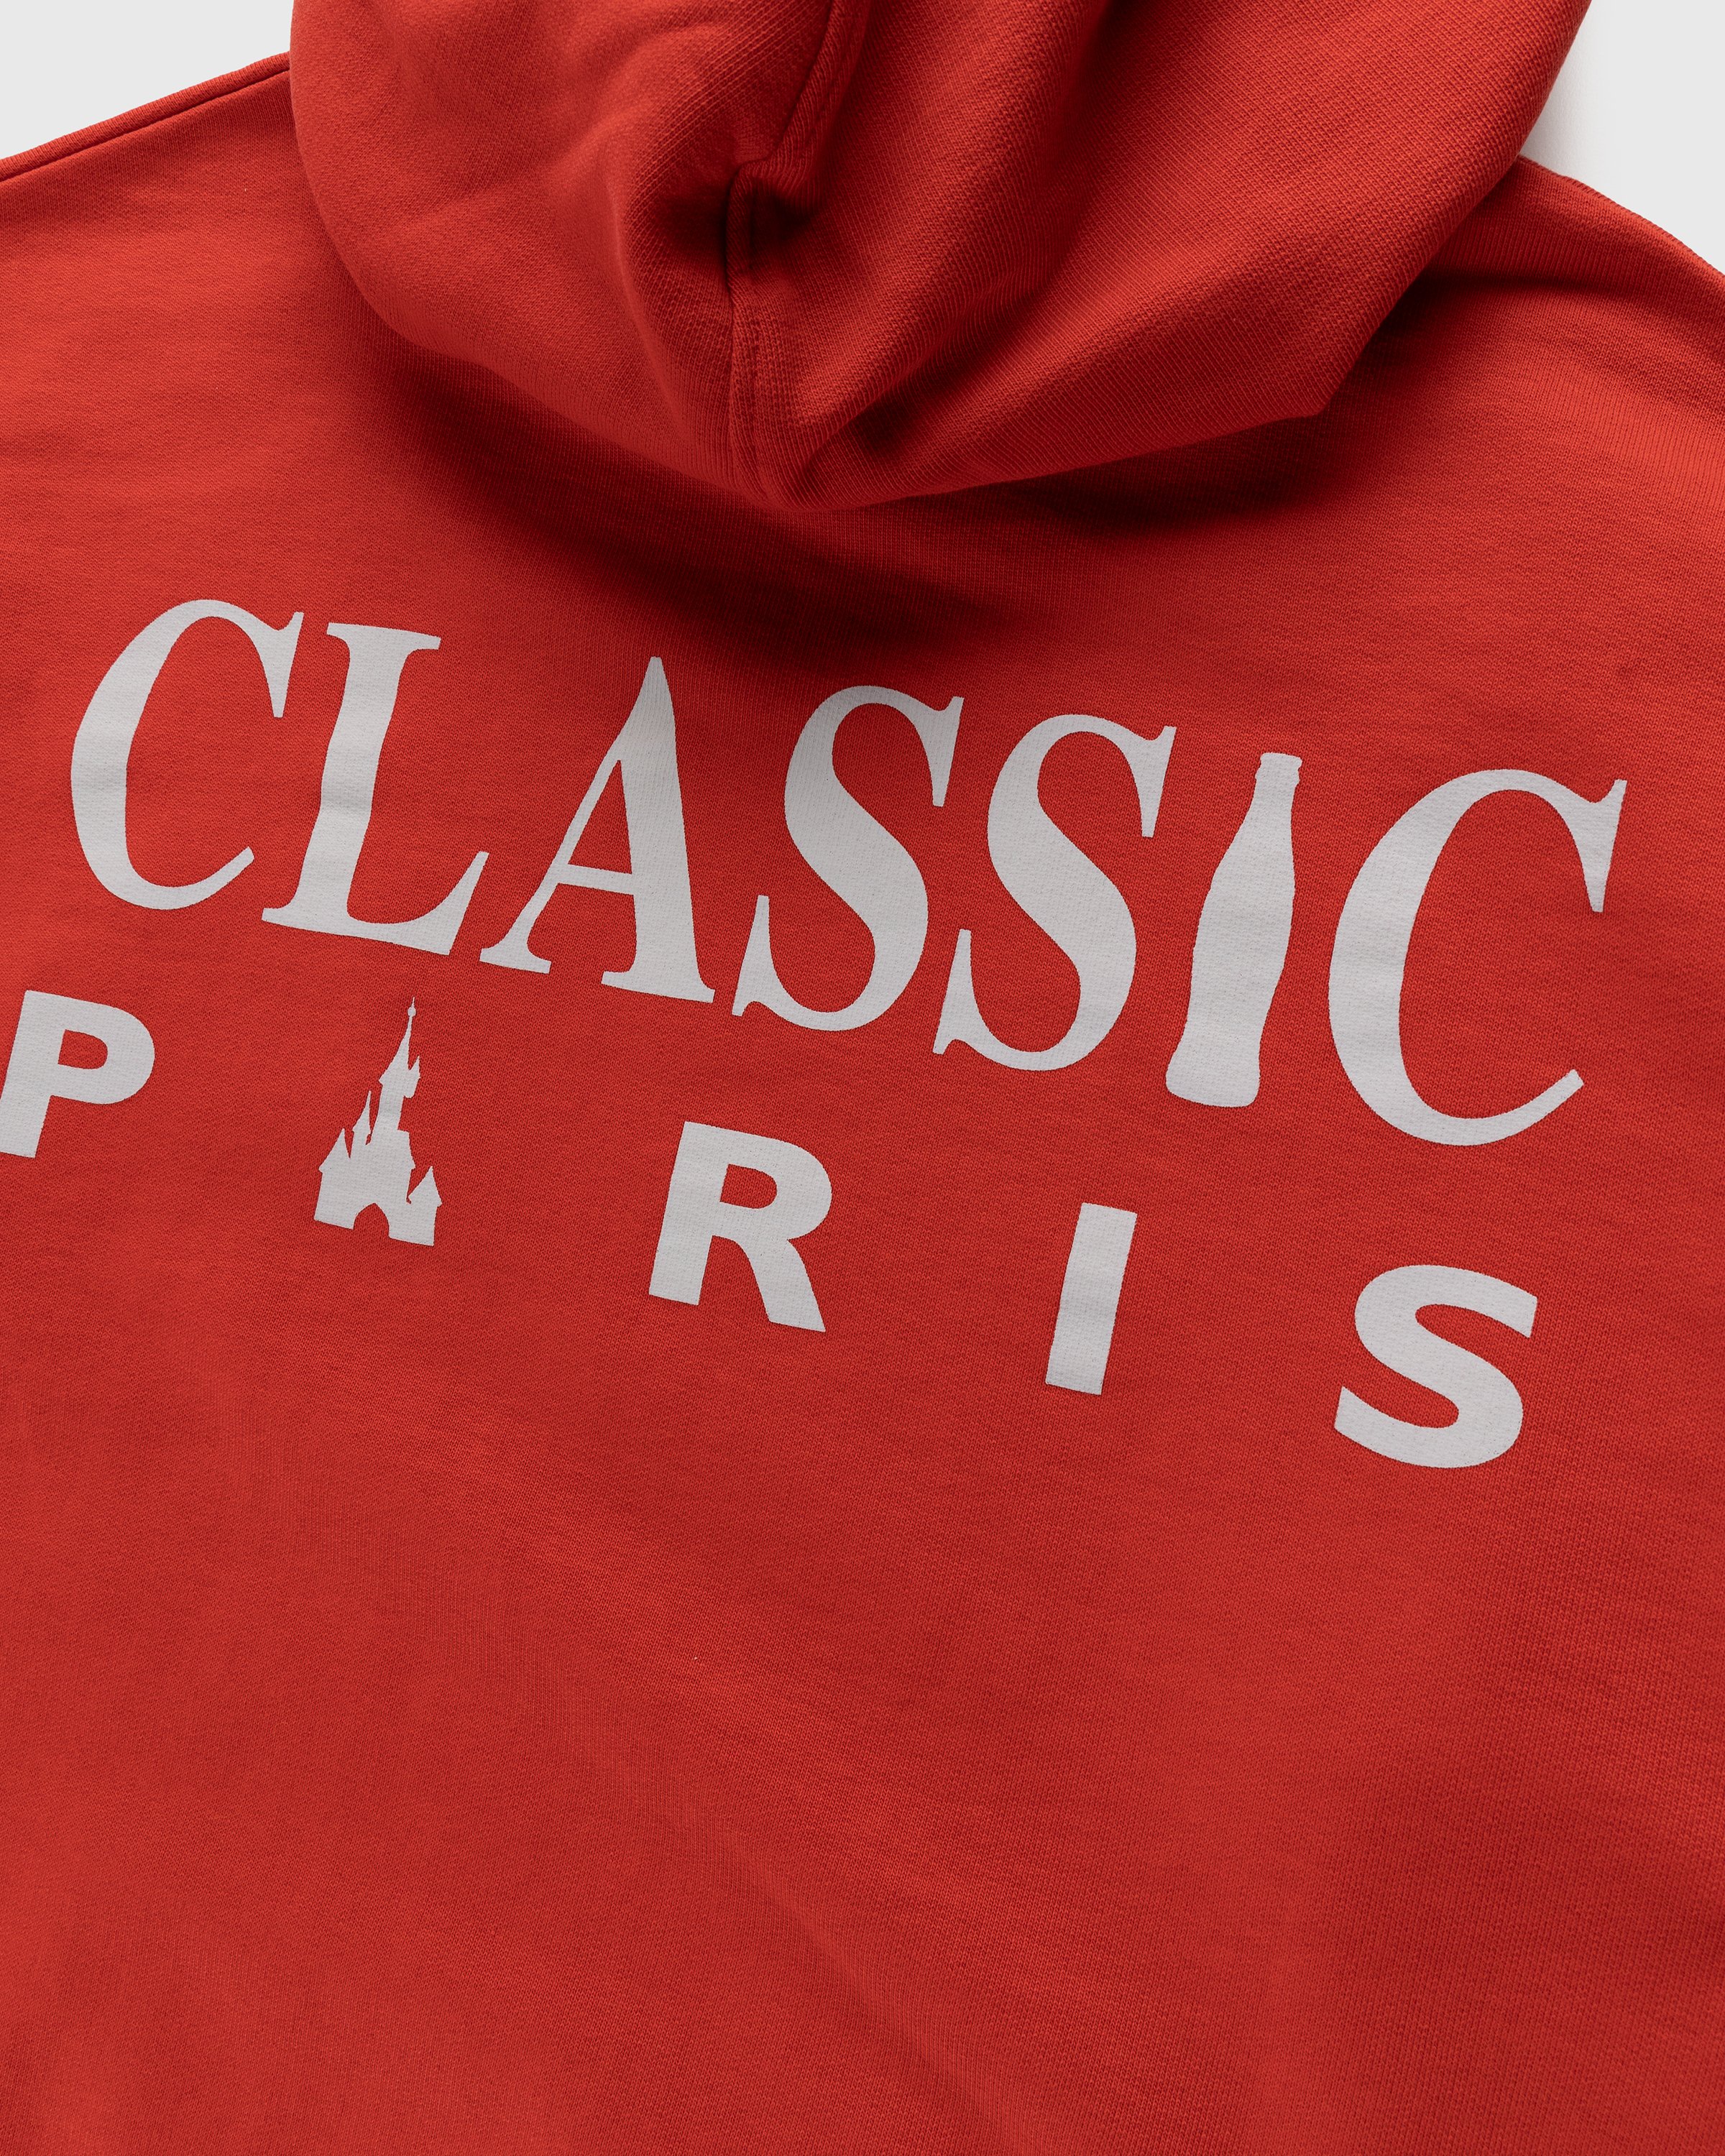 Coca-Cola x Disneyland Paris - Not In Paris 4 Classic Paris Hoodie Red - Clothing - Red - Image 4